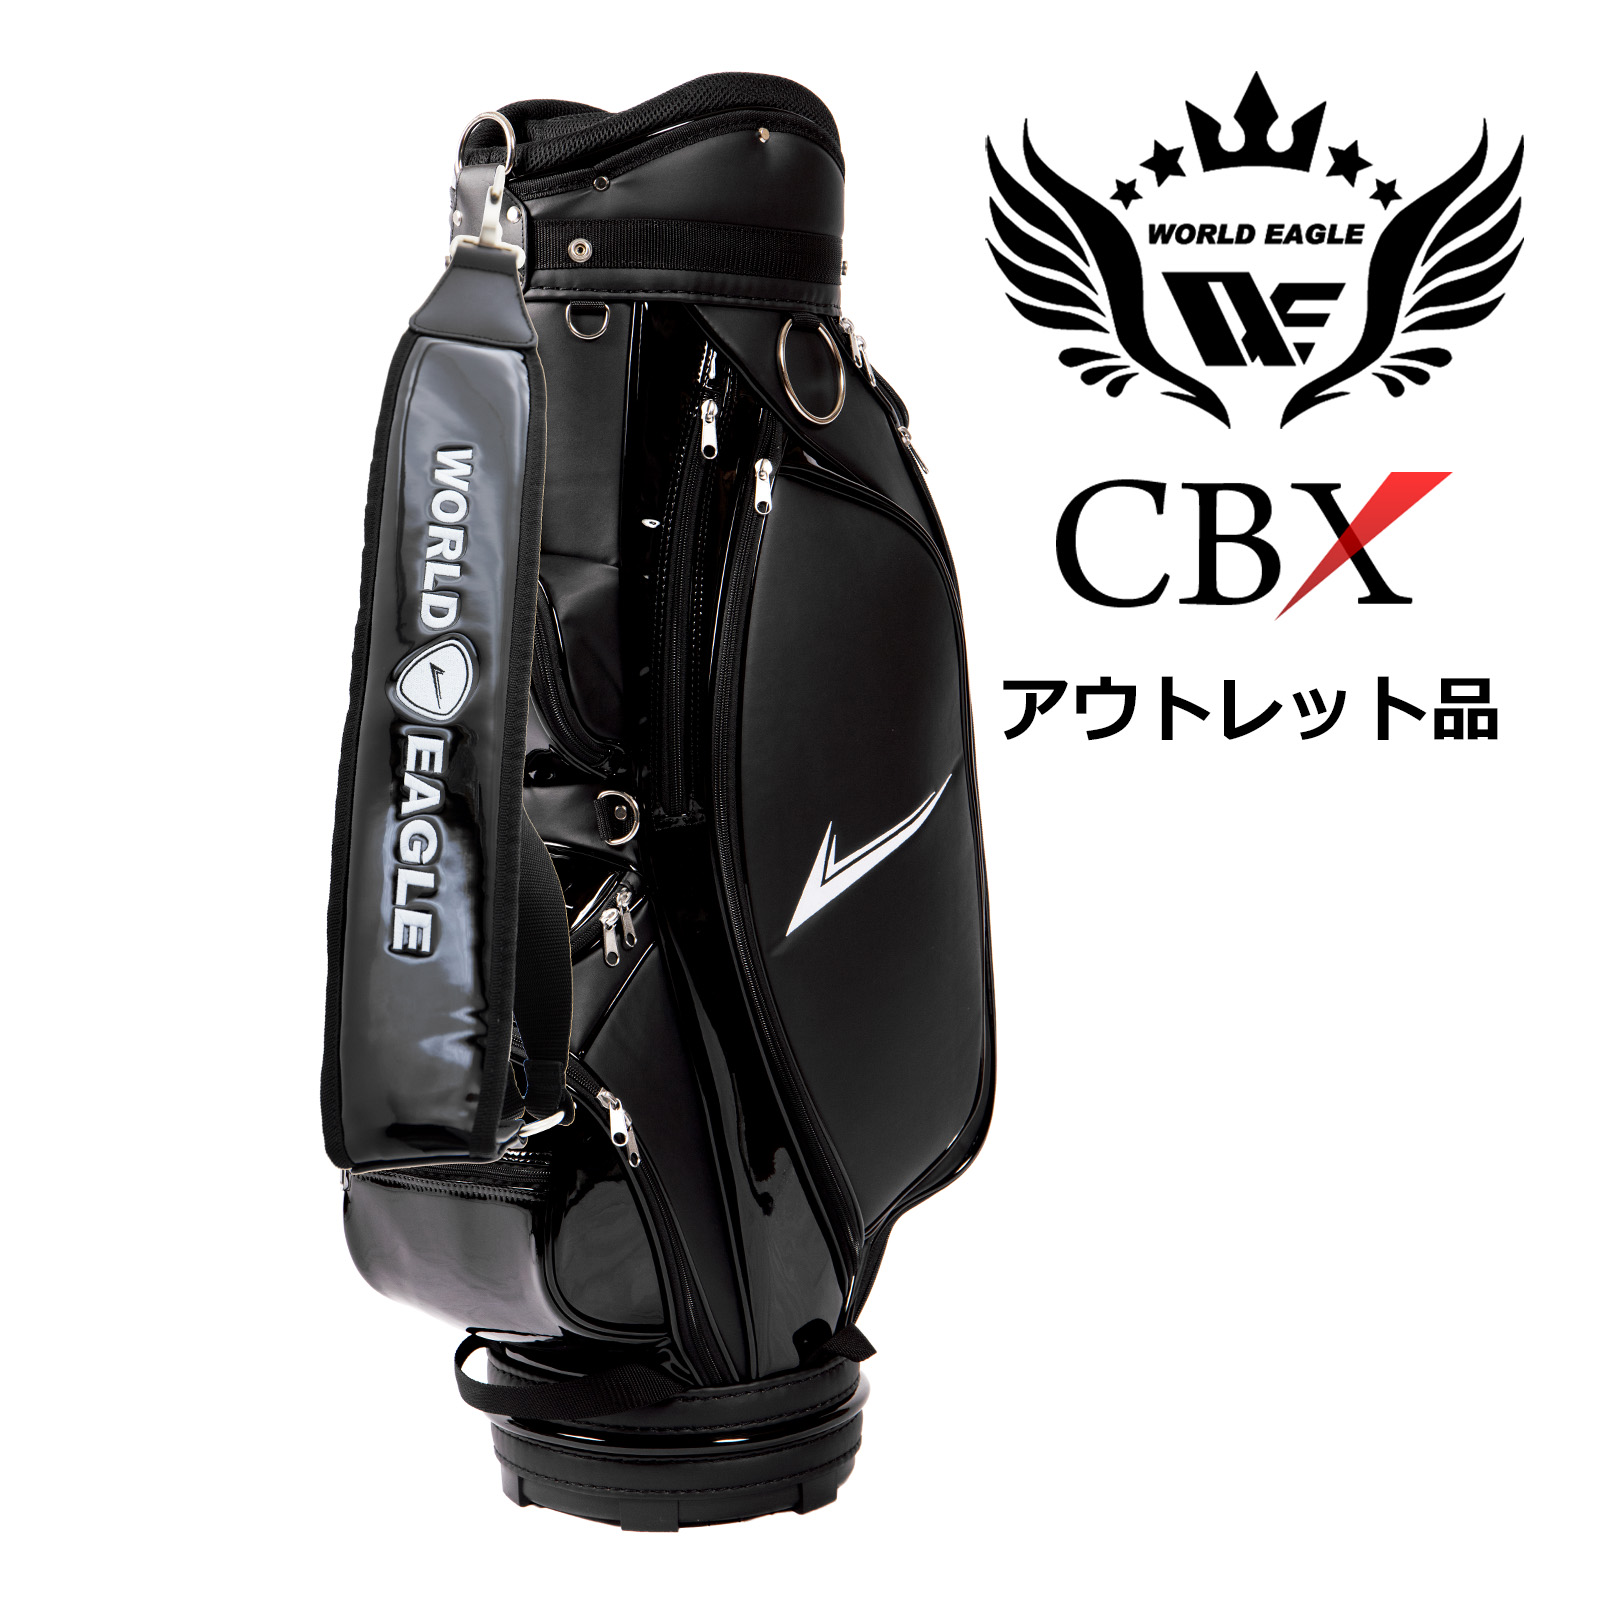 アウトレット品（わけあり 展示 撮影） ワールドイーグル メンズ WE-CBX キャディバッグ 001 ブラック 高級感のある上品なフェイクレザー 最適な9.5型 しかも軽量 ゴルフバック キャディバッグ カートバッグ 軽量